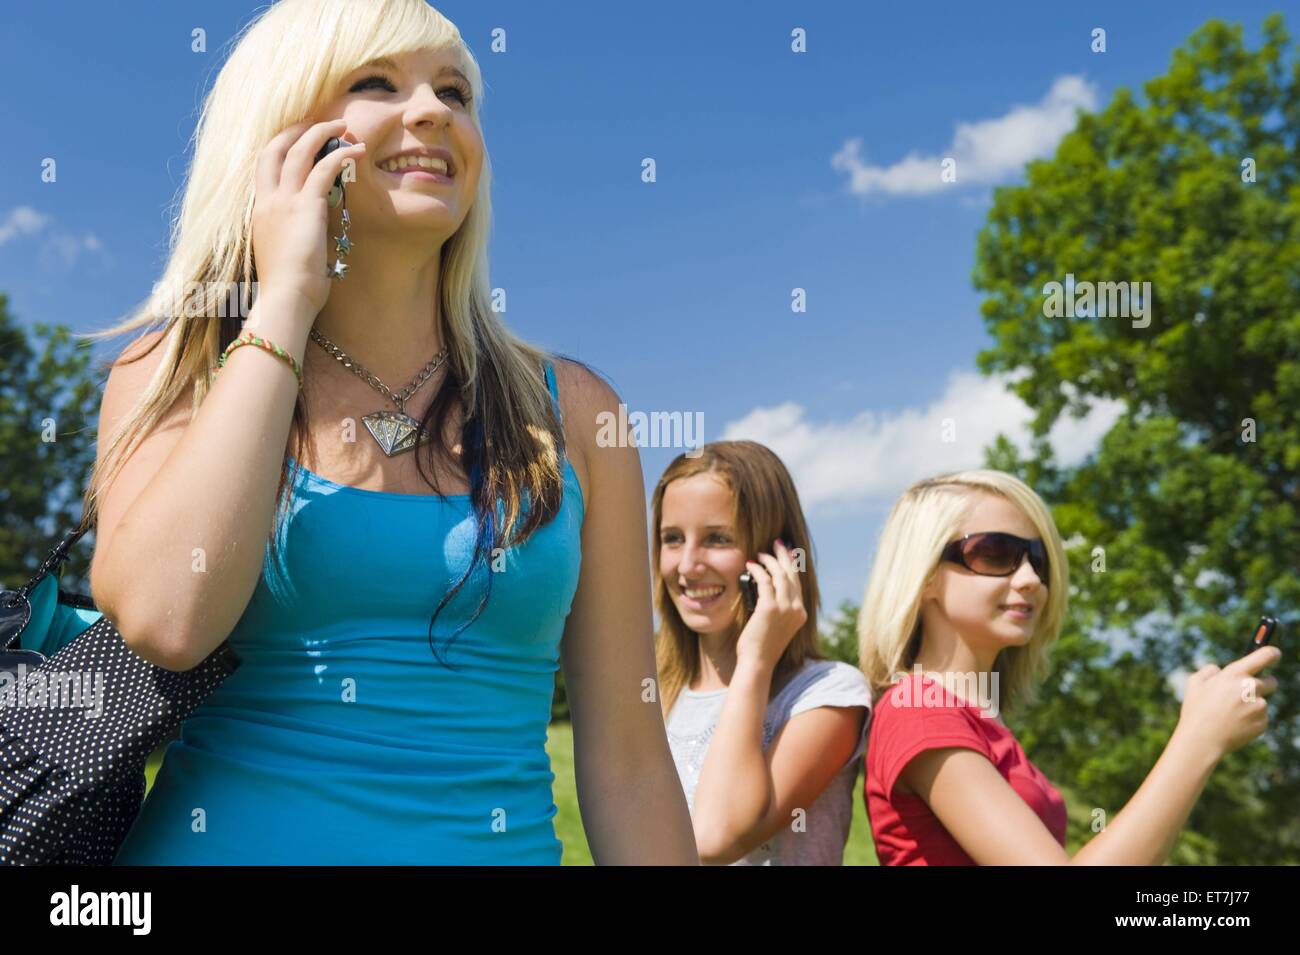 Drei junge Maedchen stehen auf einer Wiese und telefonieren laechelnd mit dem Handy | tre giovani ragazze in piedi in un prato pho Foto Stock